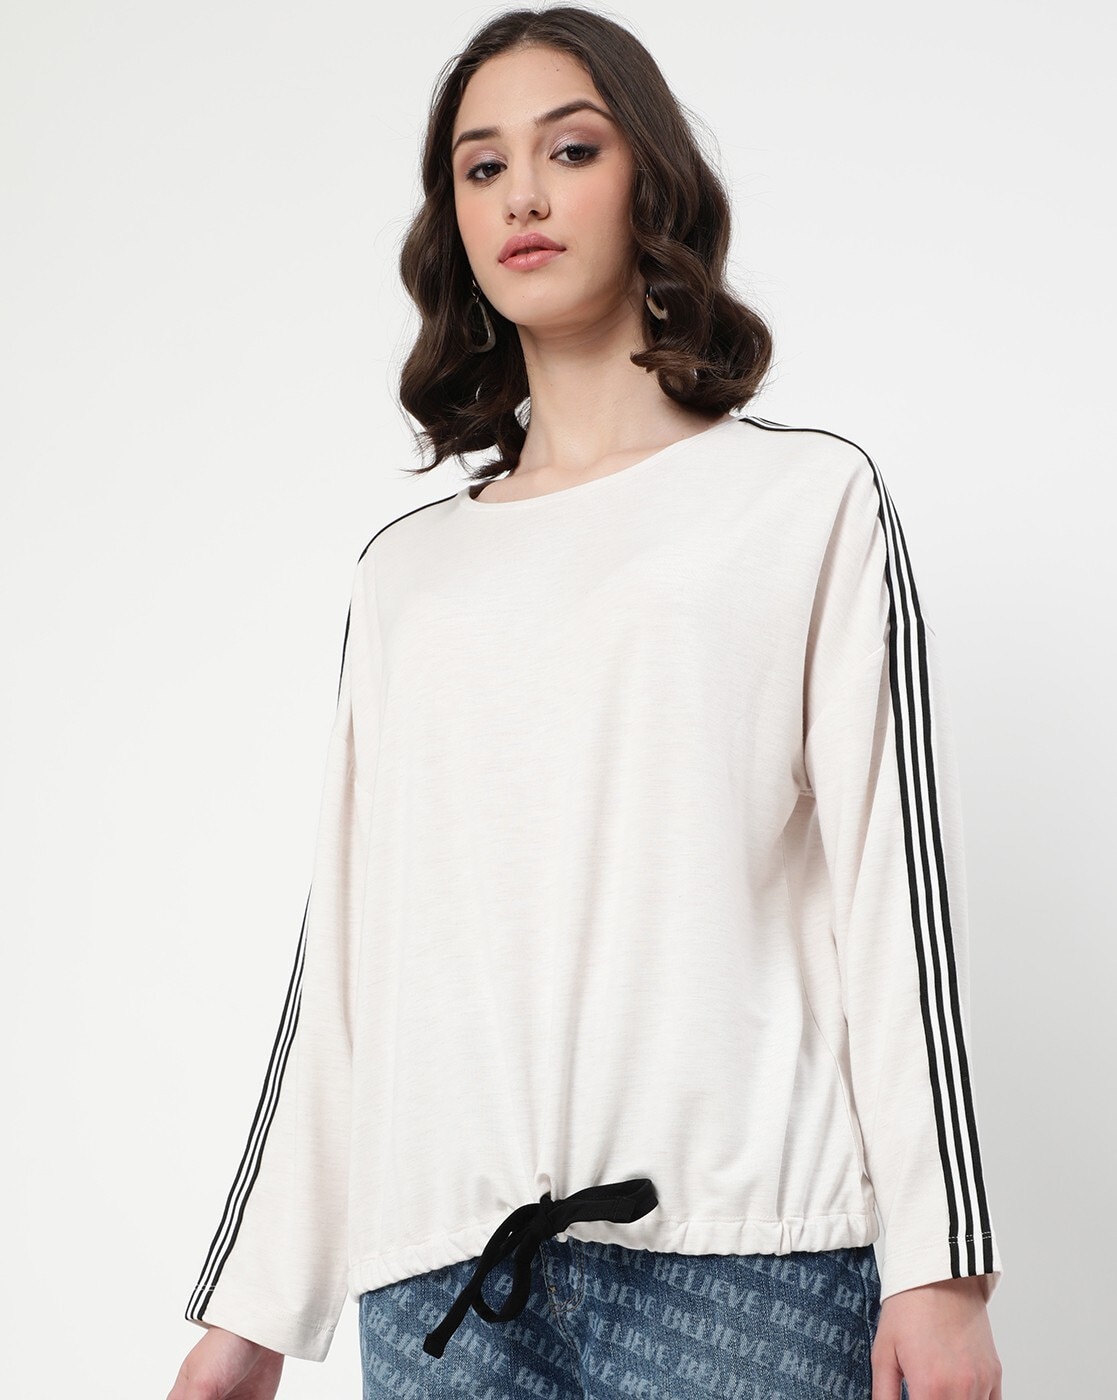 Beige Sweatshirt Hoodies for Women by Vero Moda Online